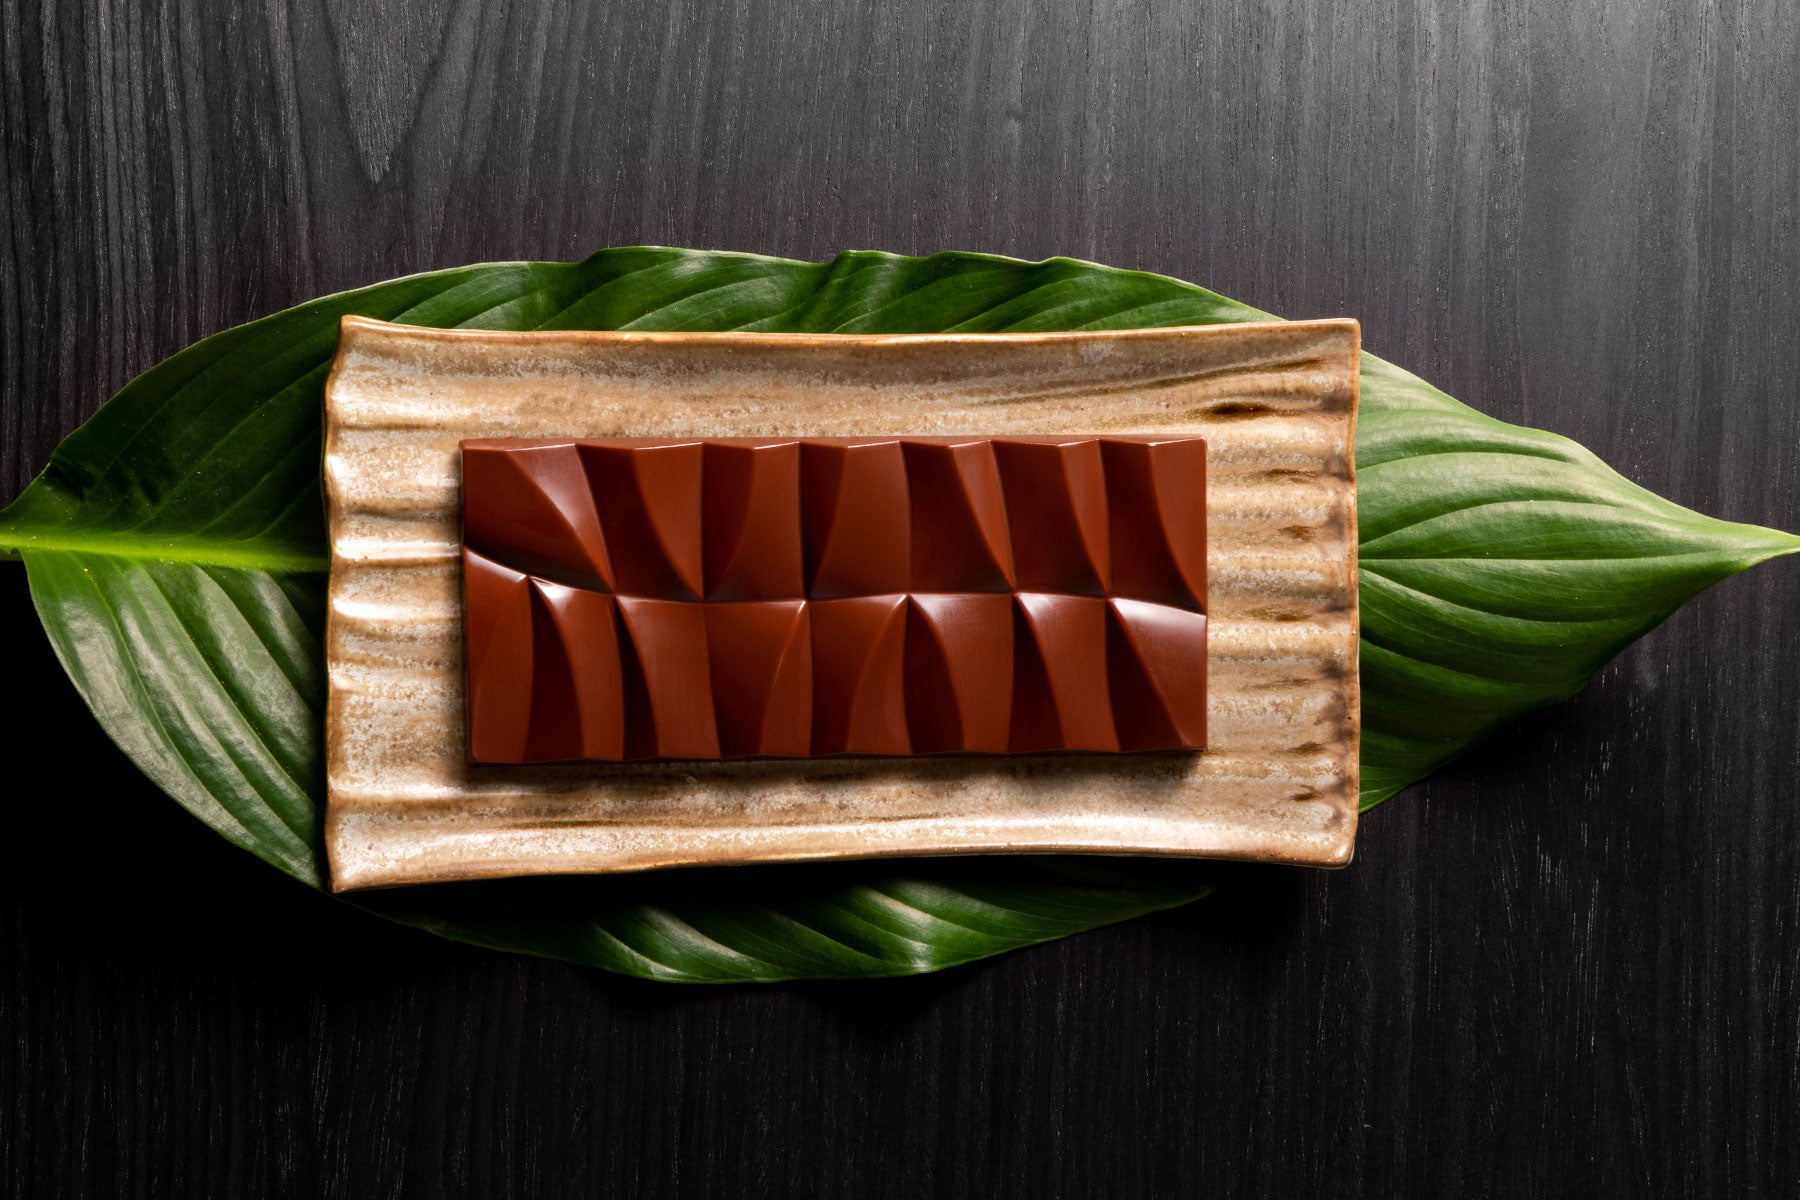 Descubra os segredos de um chocolate de qualidade